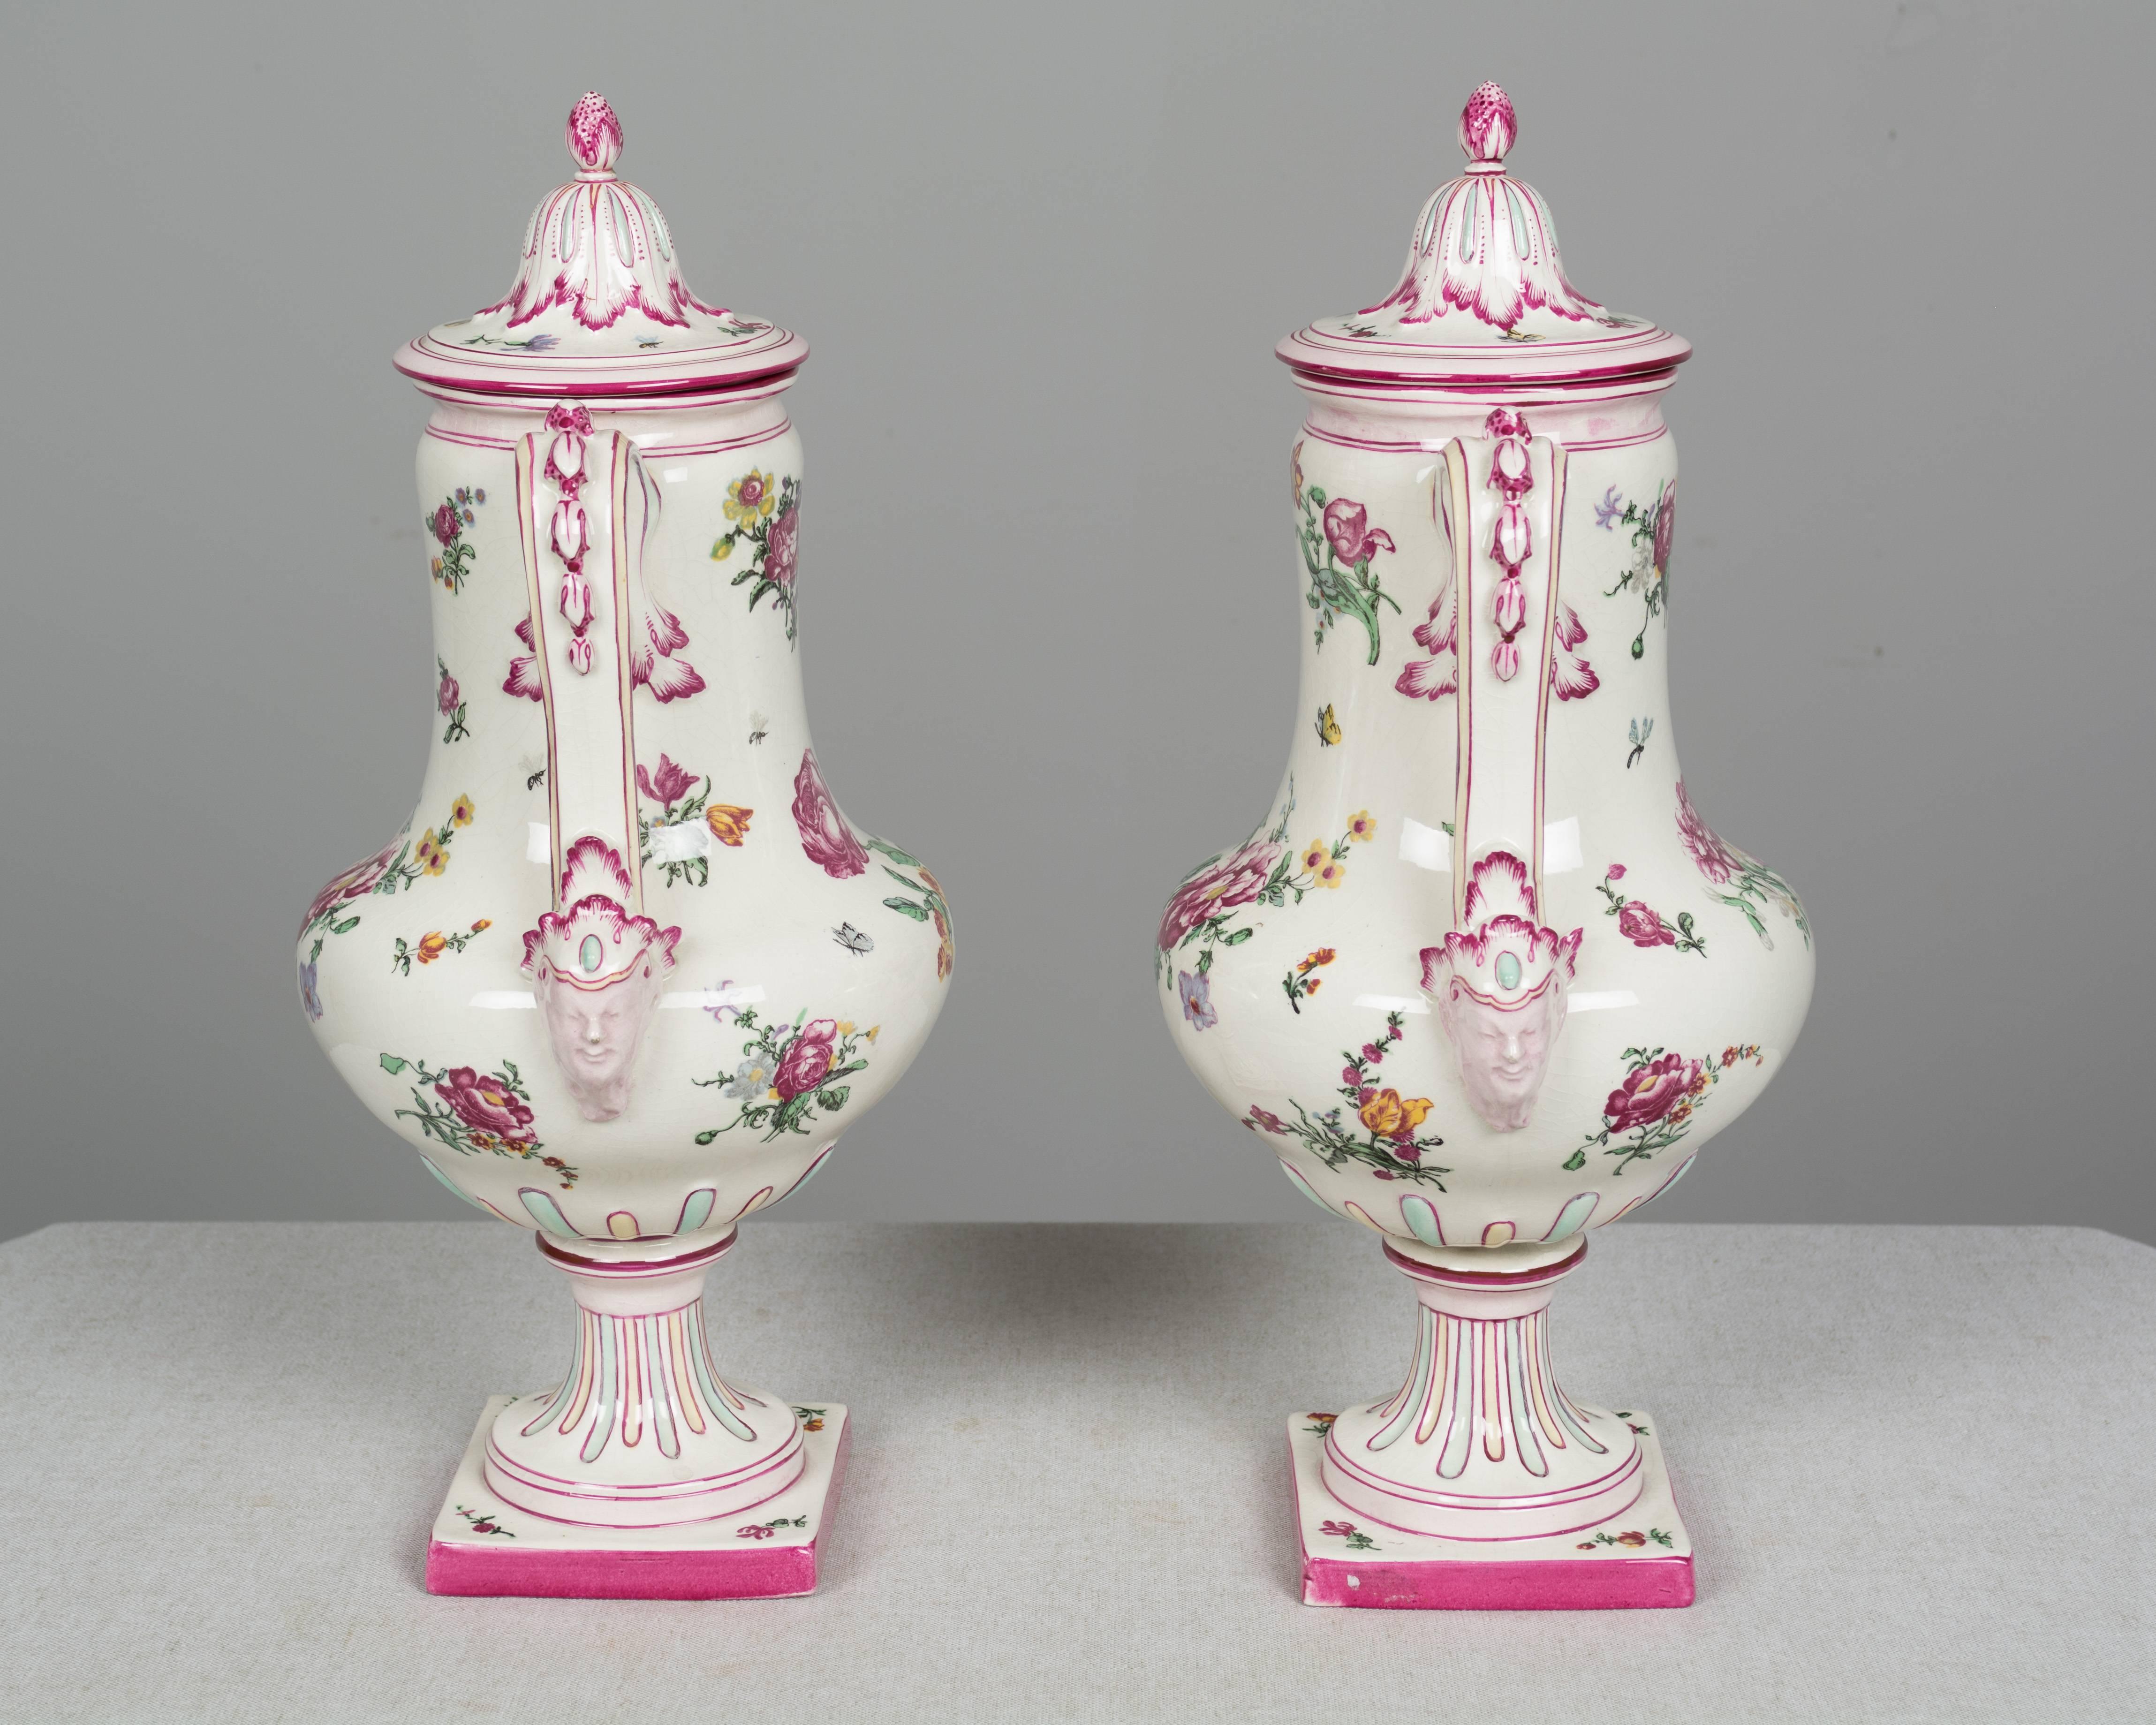 Une paire d'urnes en faïence de Gien du 19ème siècle avec une décoration florale peinte à la main. Belle forme avec doubles poignées et base carrée sur piédestal. Couvercles avec boutons en forme de fraise. Timbre de Gien sur la face inférieure,